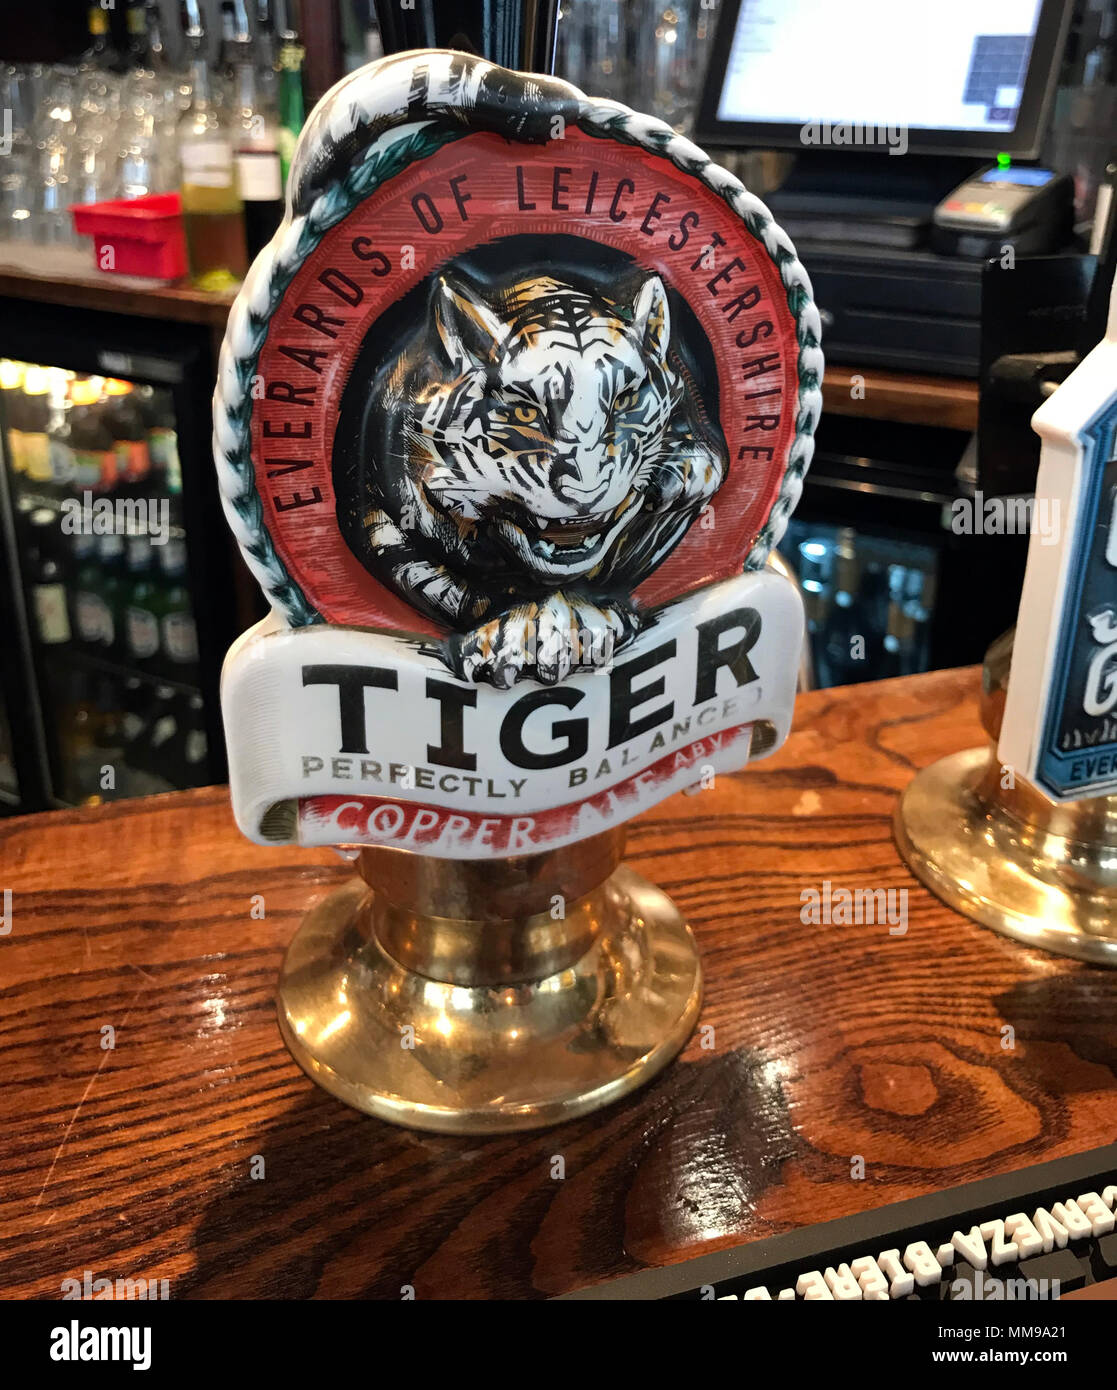 Everards Tiger Beer pompes sur un bar, dans un pub anglais traditionnel, England, UK Banque D'Images